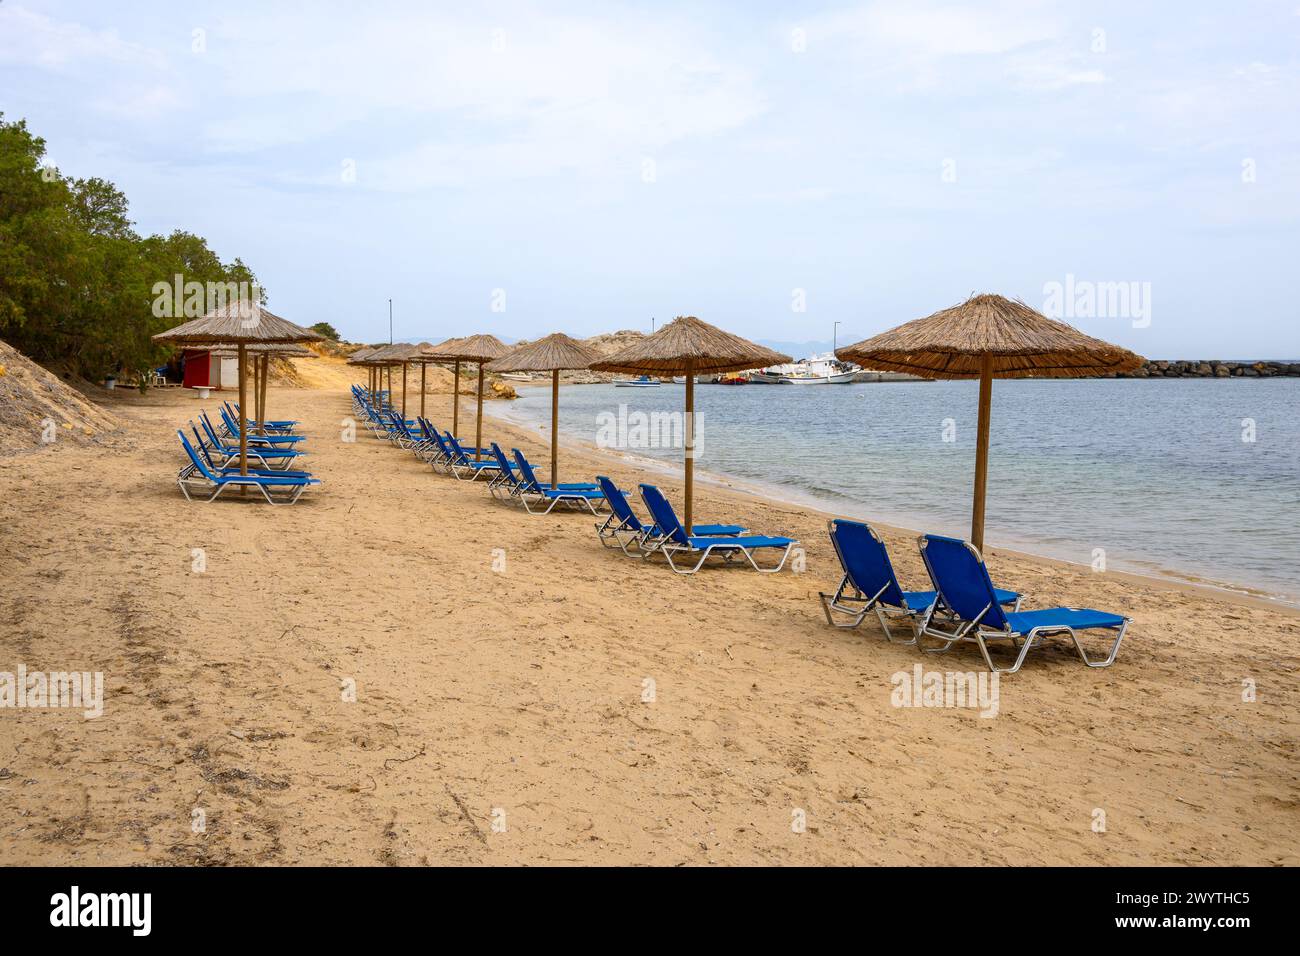 Sun loungers on sandy Limnionas beach. Kos island, Dodecanese, Greece Stock Photo